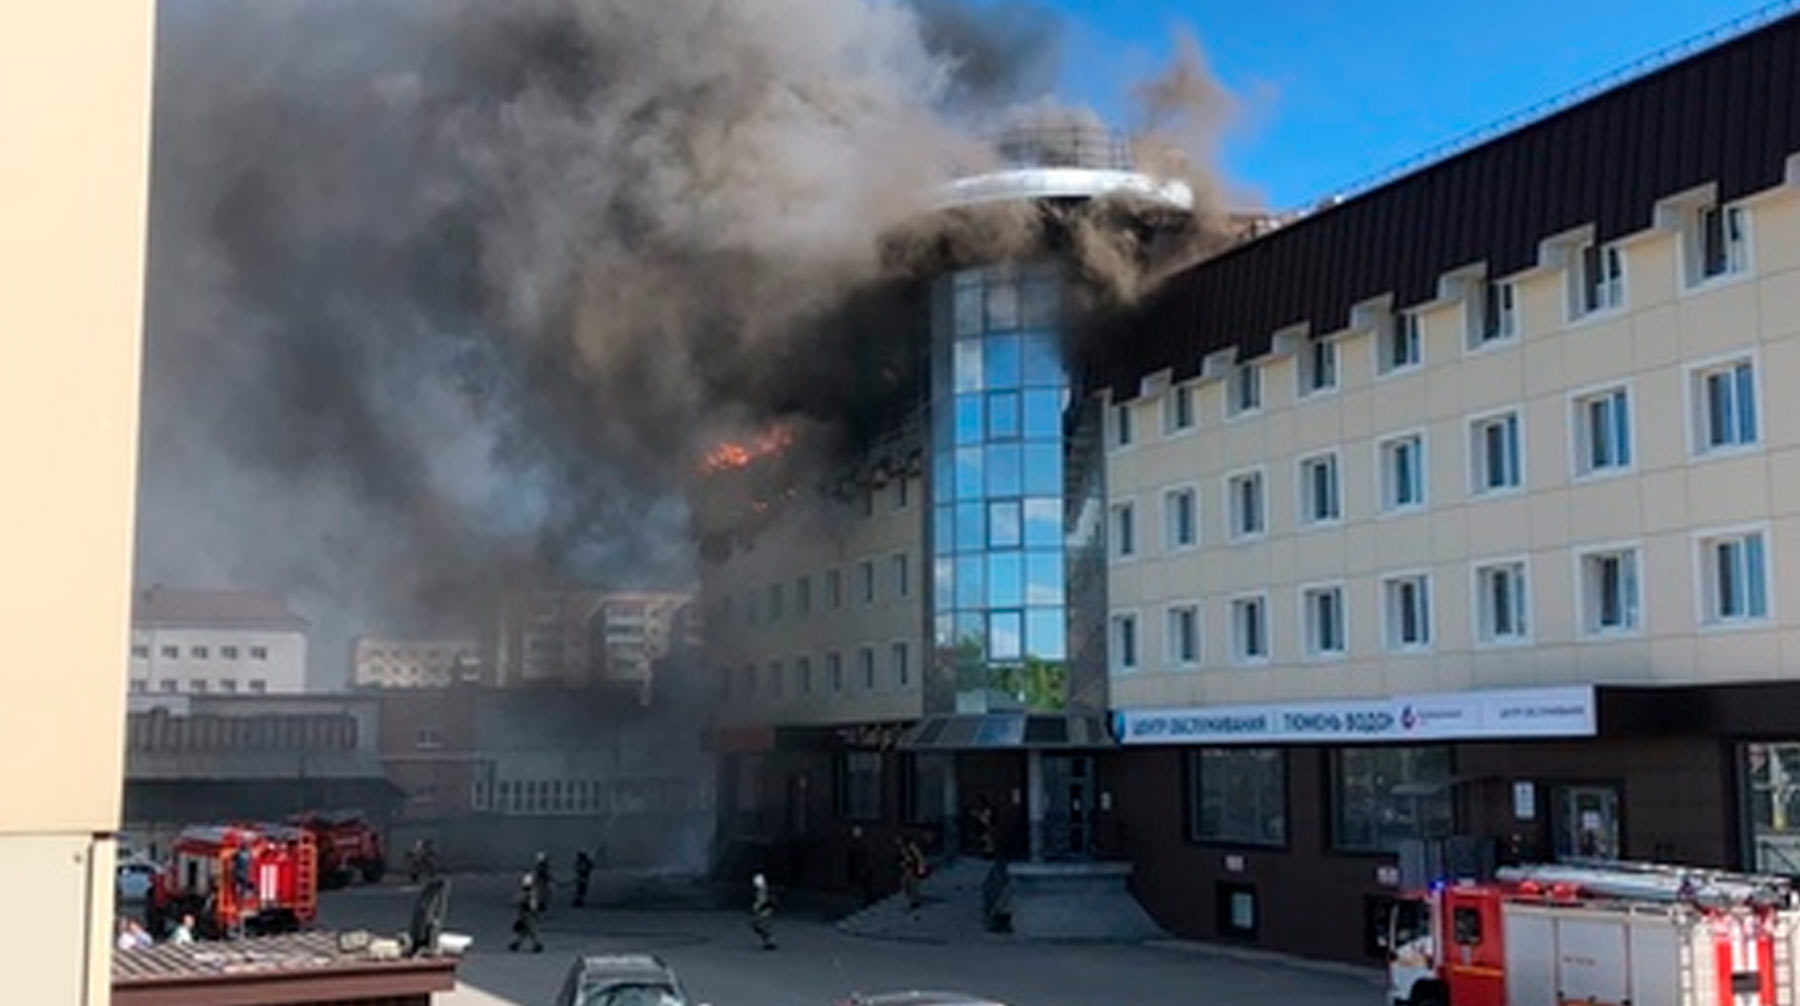 Пламя охватило крышу здания по всей площади в 400 квадратных метров Фото: © Вконтакте / Инцидент Тюмень